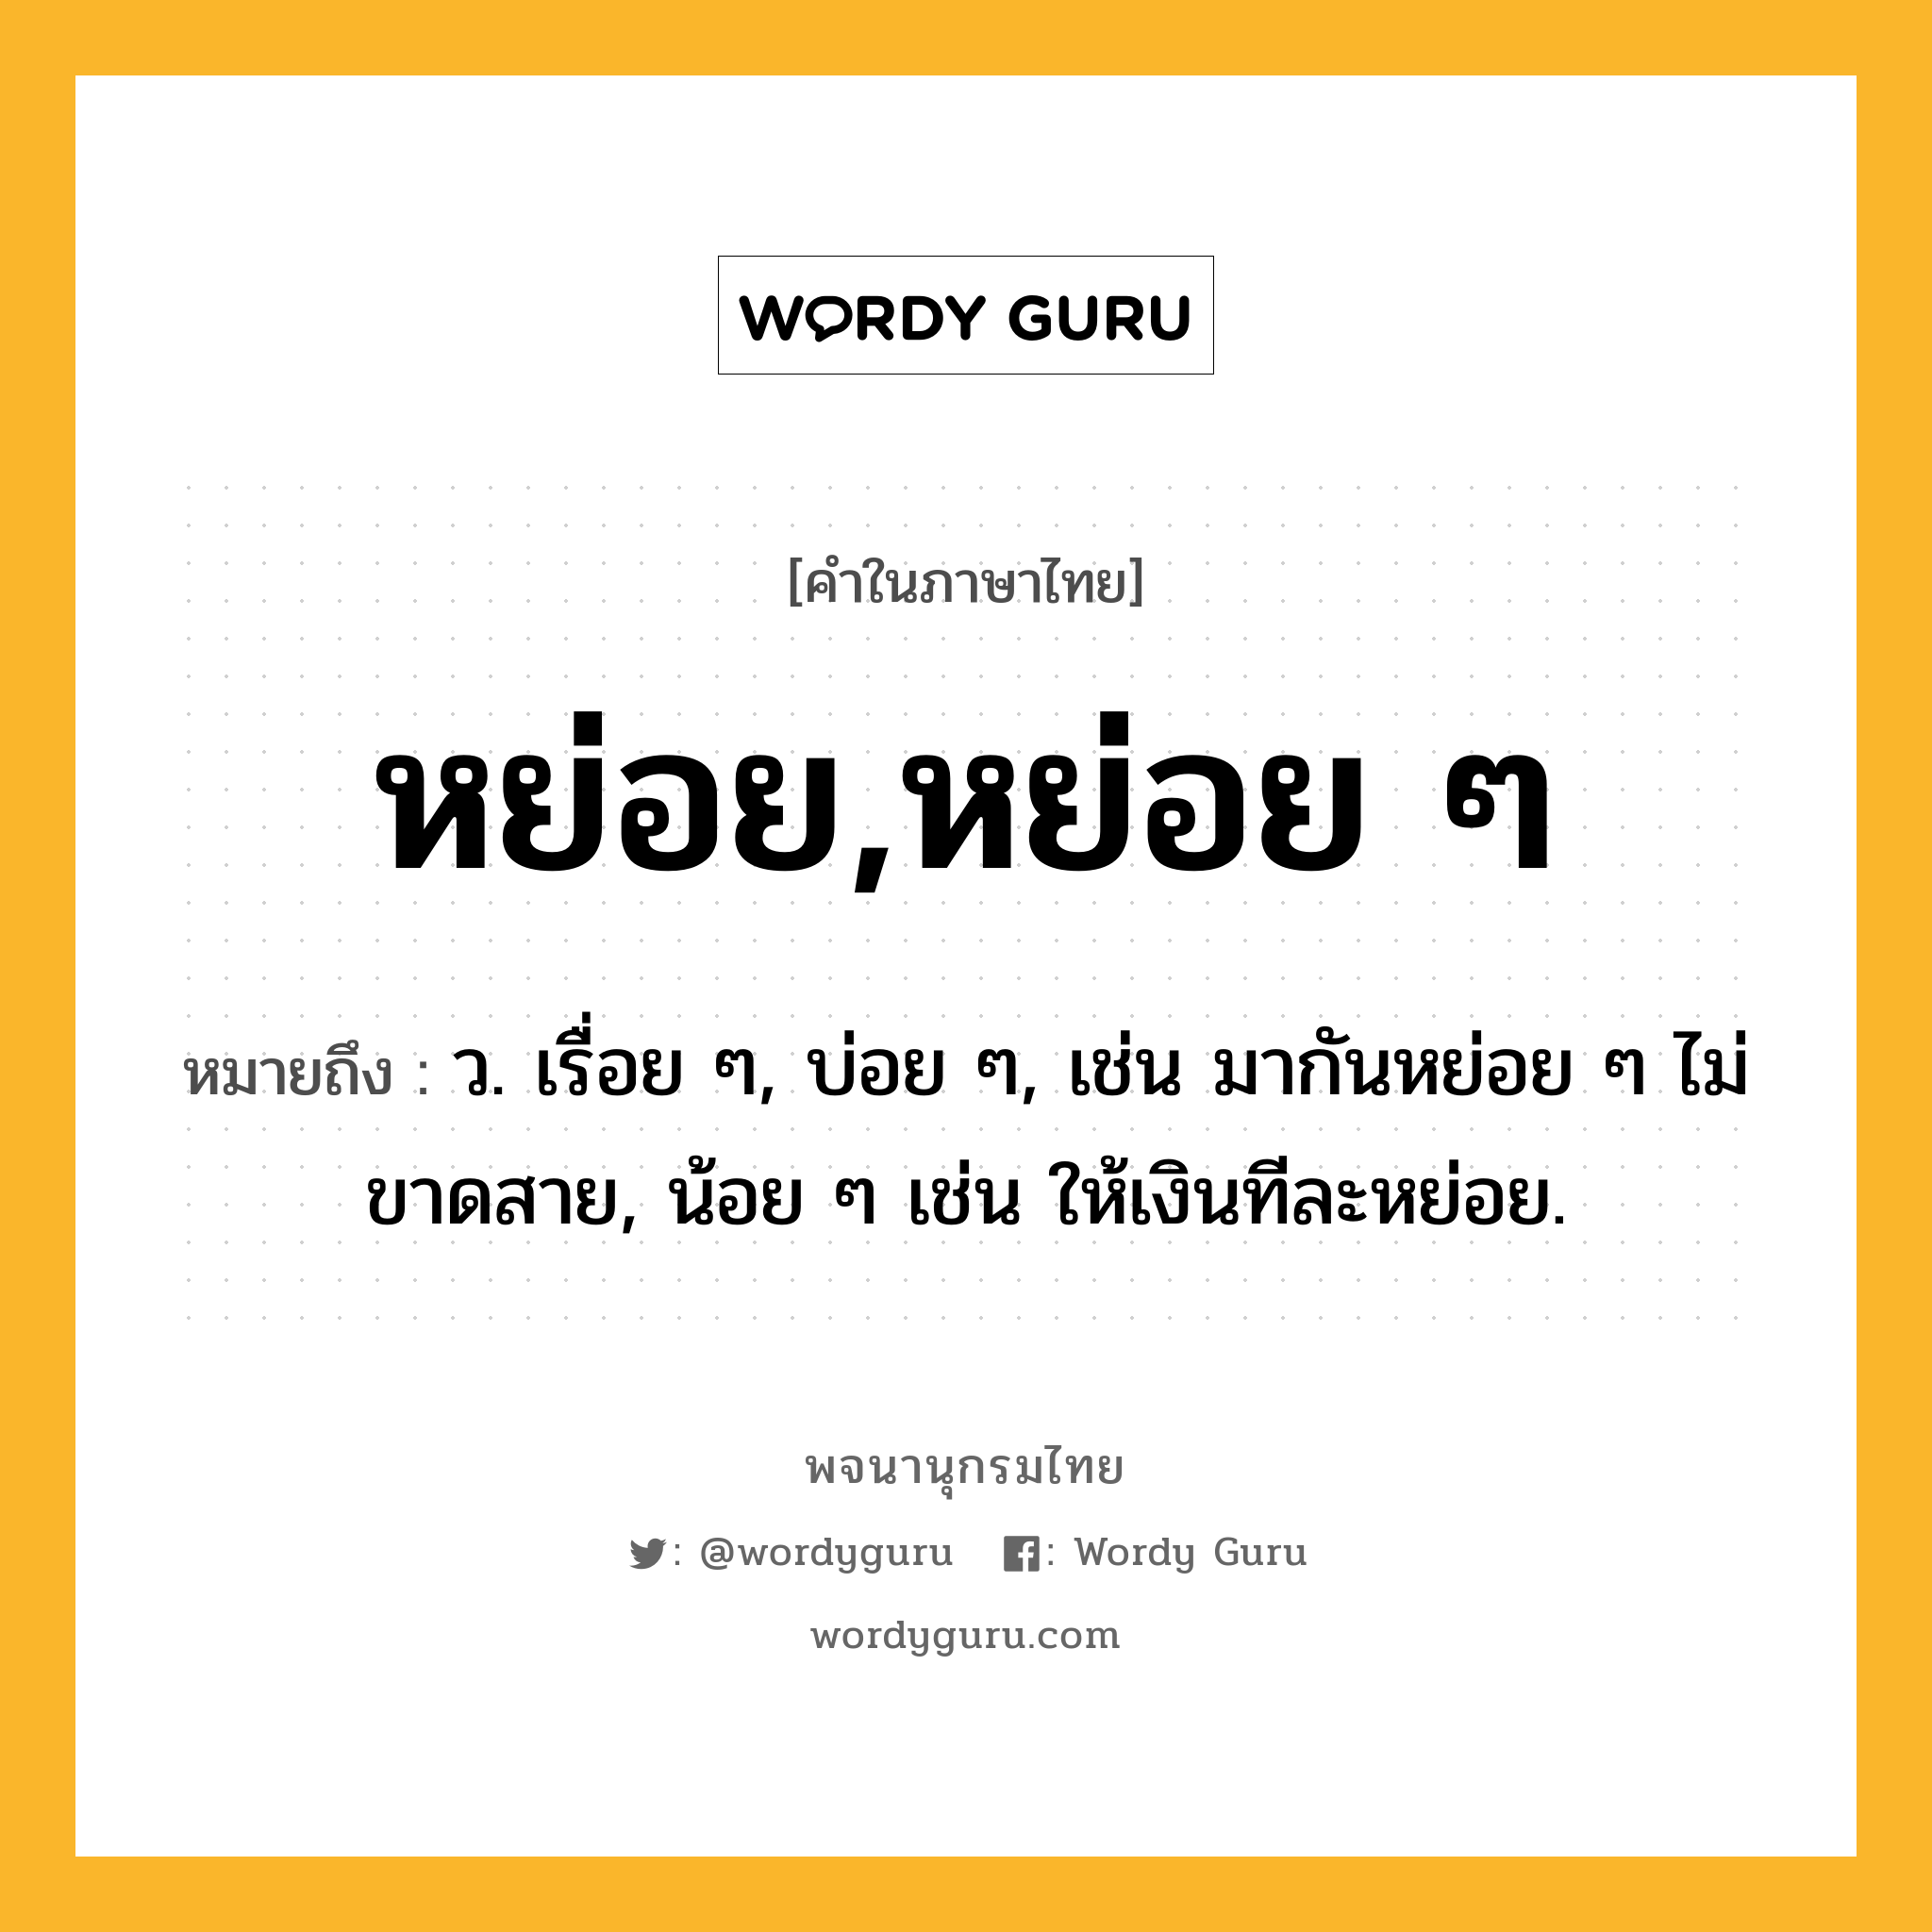 หย่อย,หย่อย ๆ ความหมาย หมายถึงอะไร?, คำในภาษาไทย หย่อย,หย่อย ๆ หมายถึง ว. เรื่อย ๆ, บ่อย ๆ, เช่น มากันหย่อย ๆ ไม่ขาดสาย, น้อย ๆ เช่น ให้เงินทีละหย่อย.